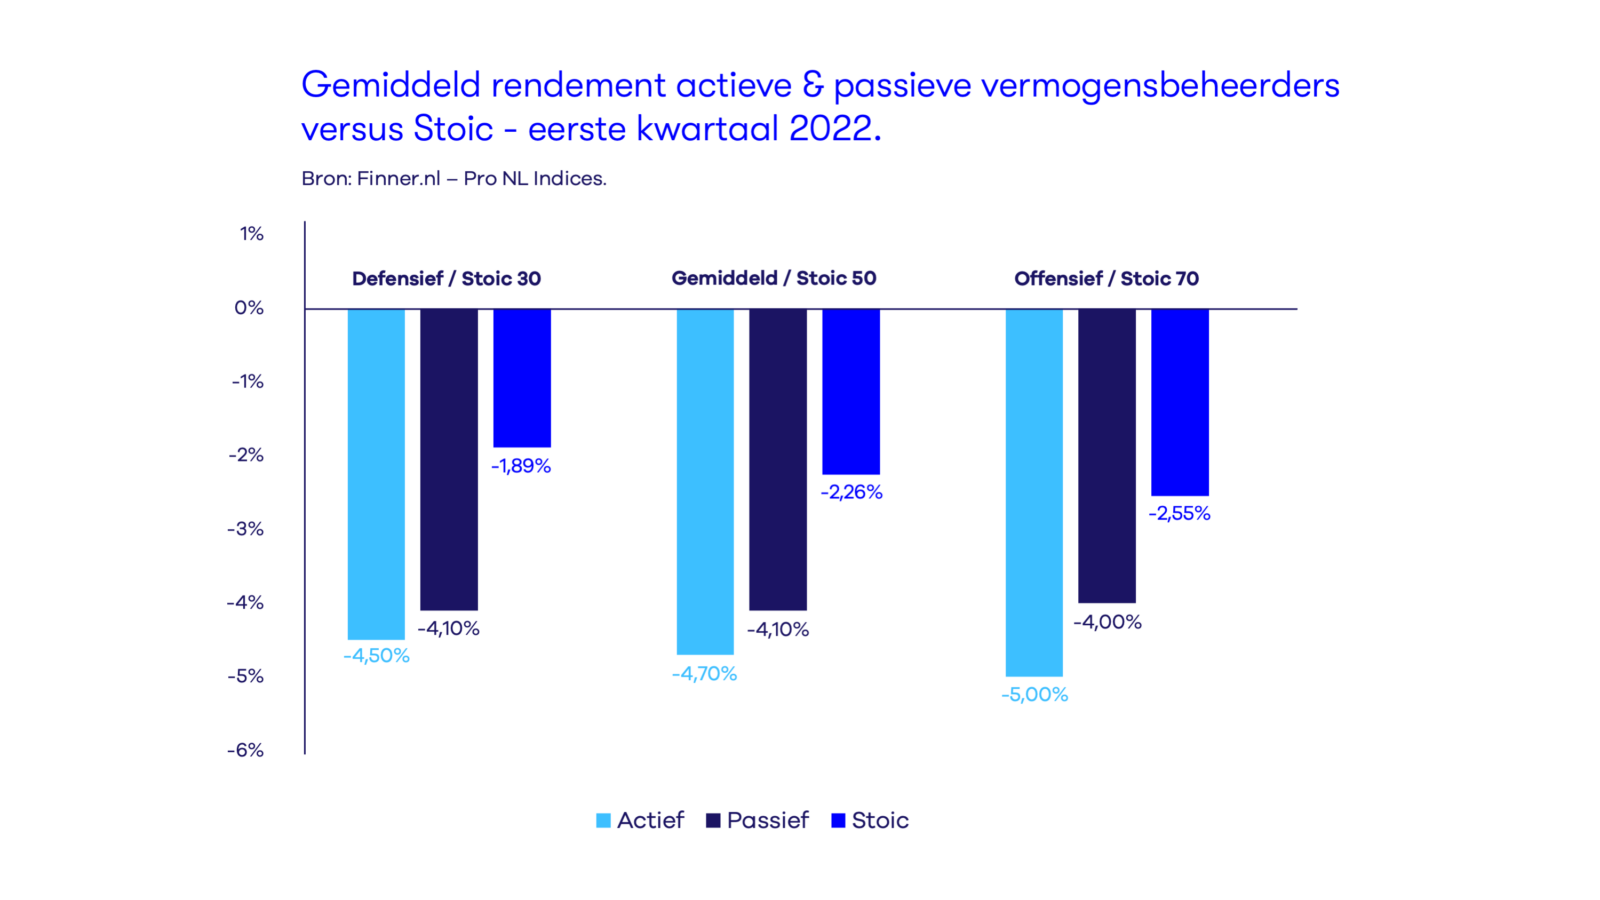 Gemiddeld rendement actieve & passieve vermogensbeheerders versus Stoic, eerste kwartaal 2022.